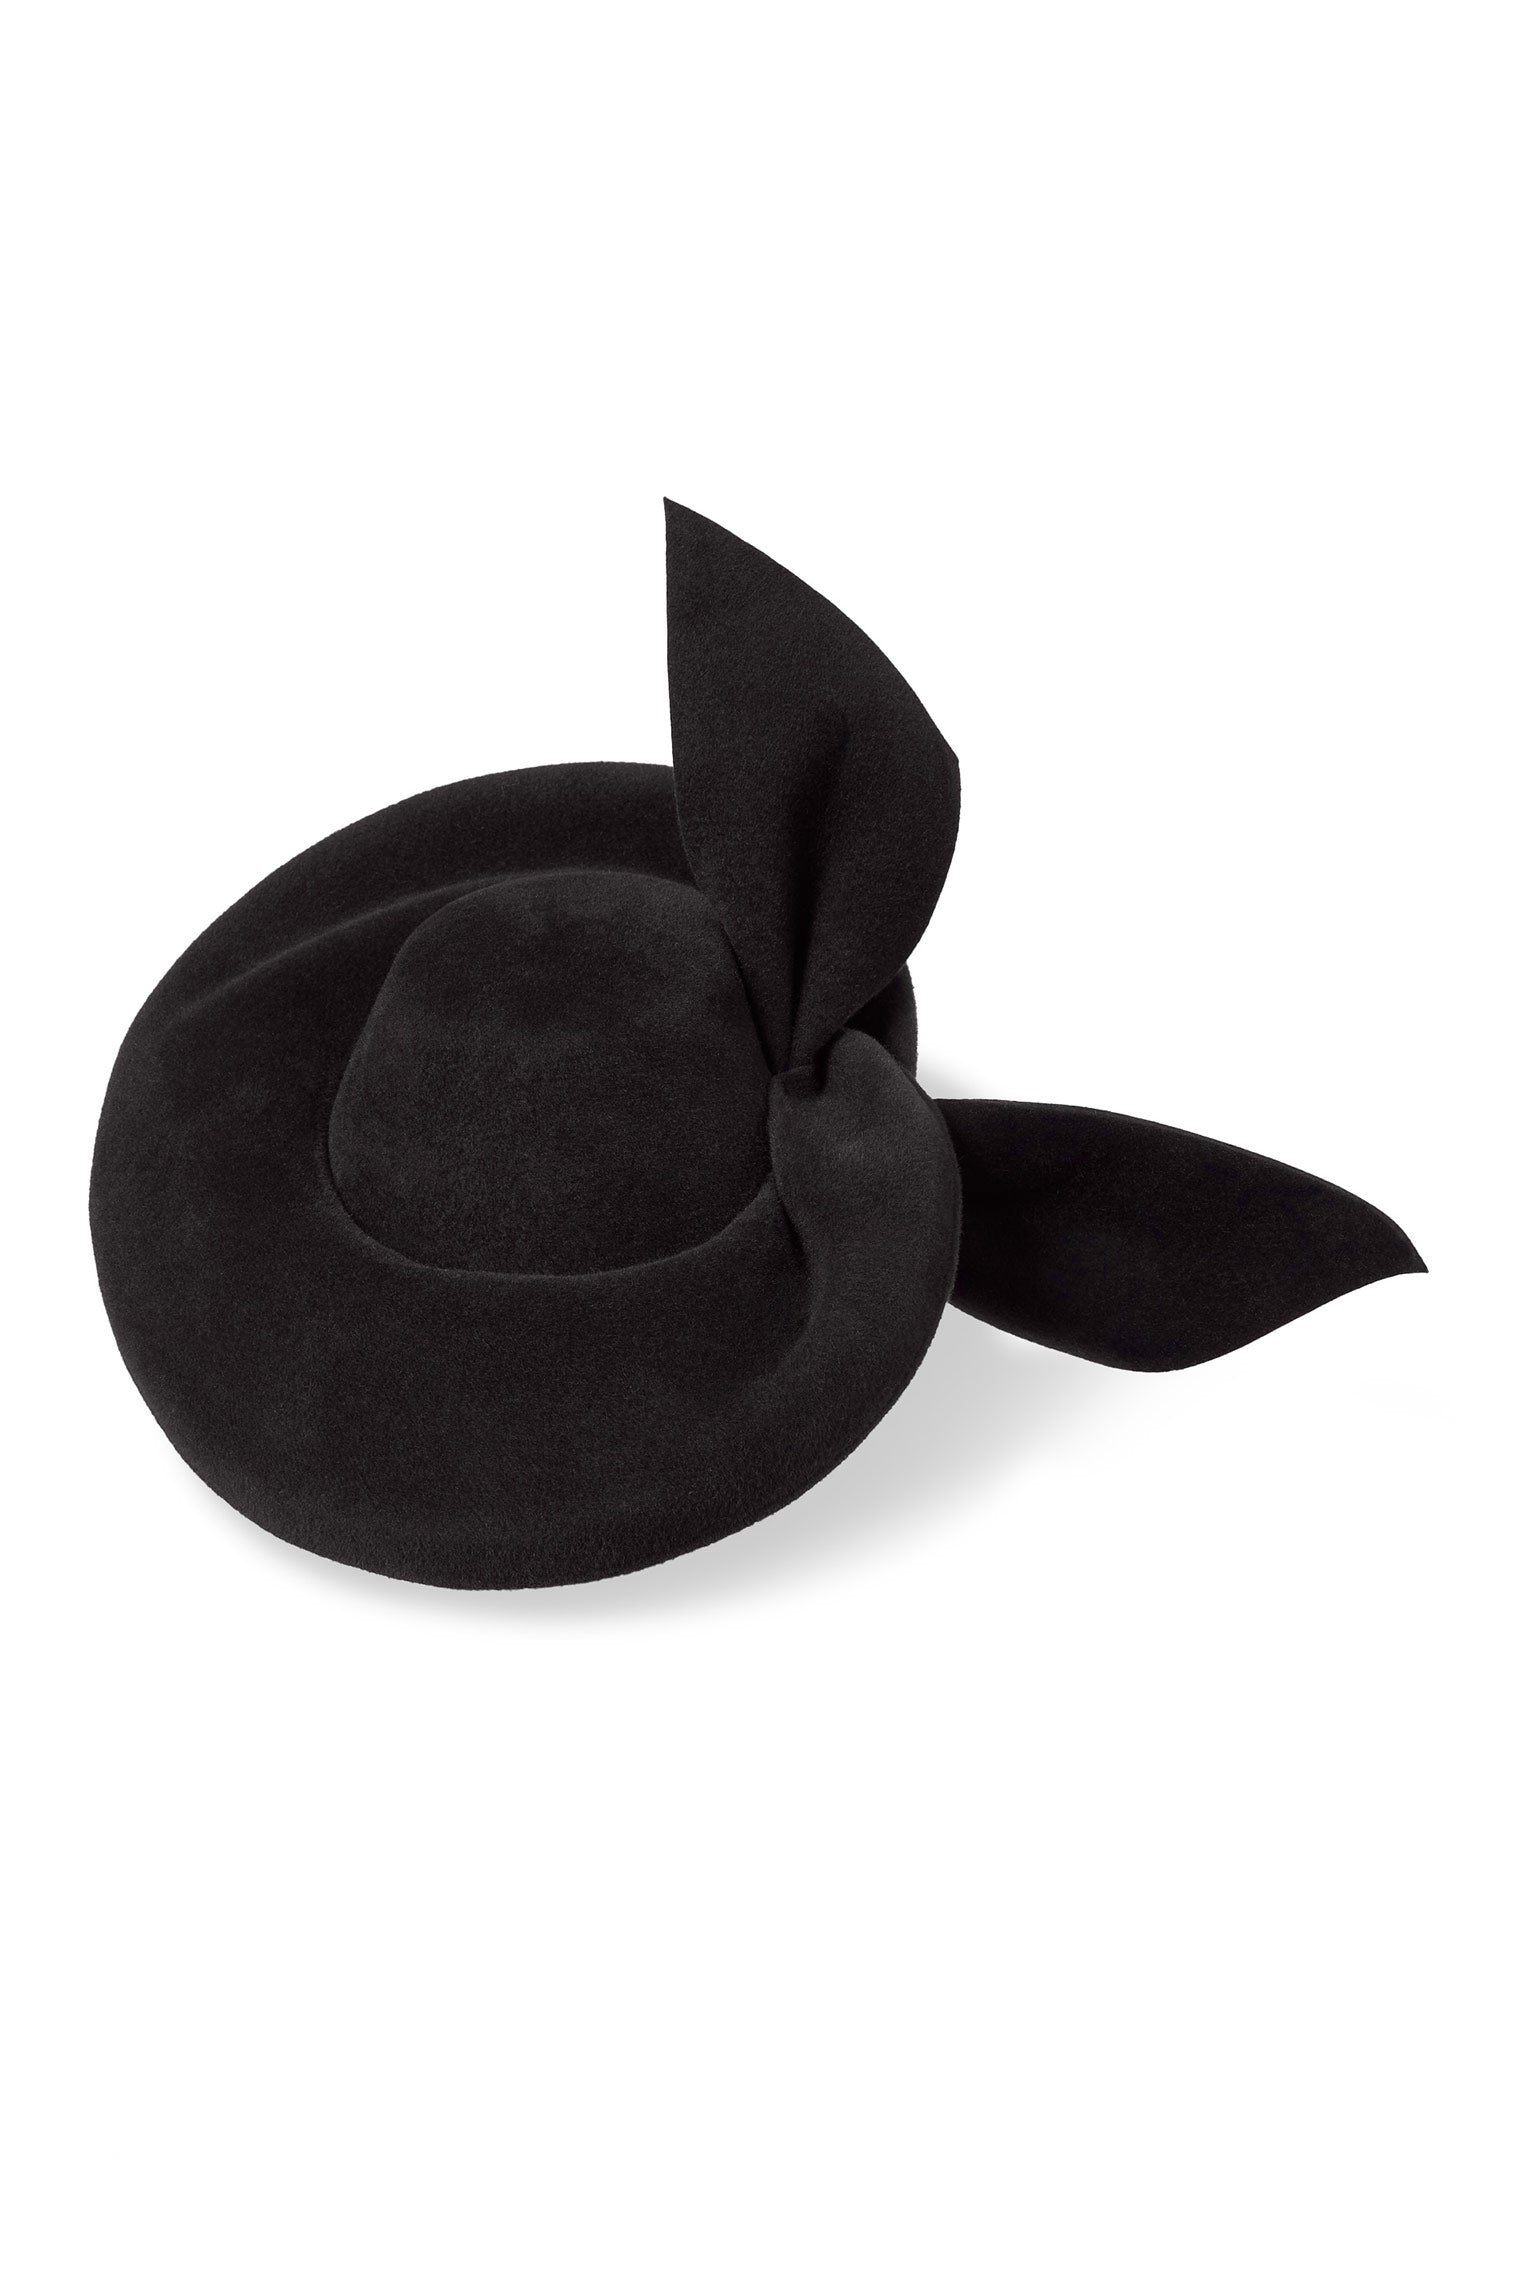 Hedy Black Percher Hat - Women’s Hats - Lock & Co. Hatters London UK